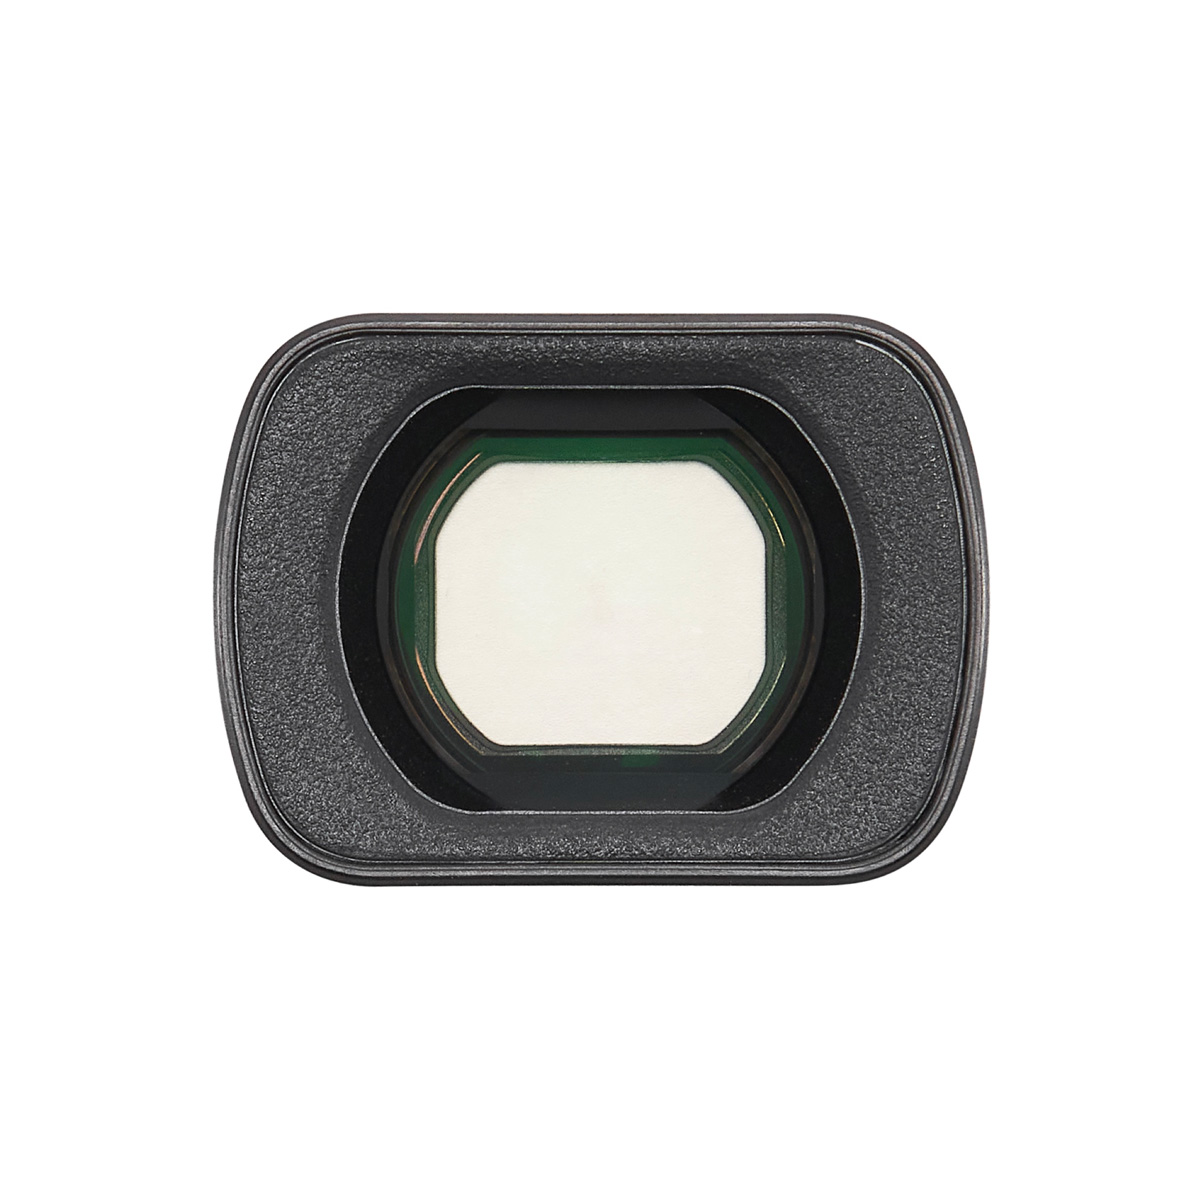 Широкоугольная линза DJI Osmo Pocket 3 Wide-Angle Lens